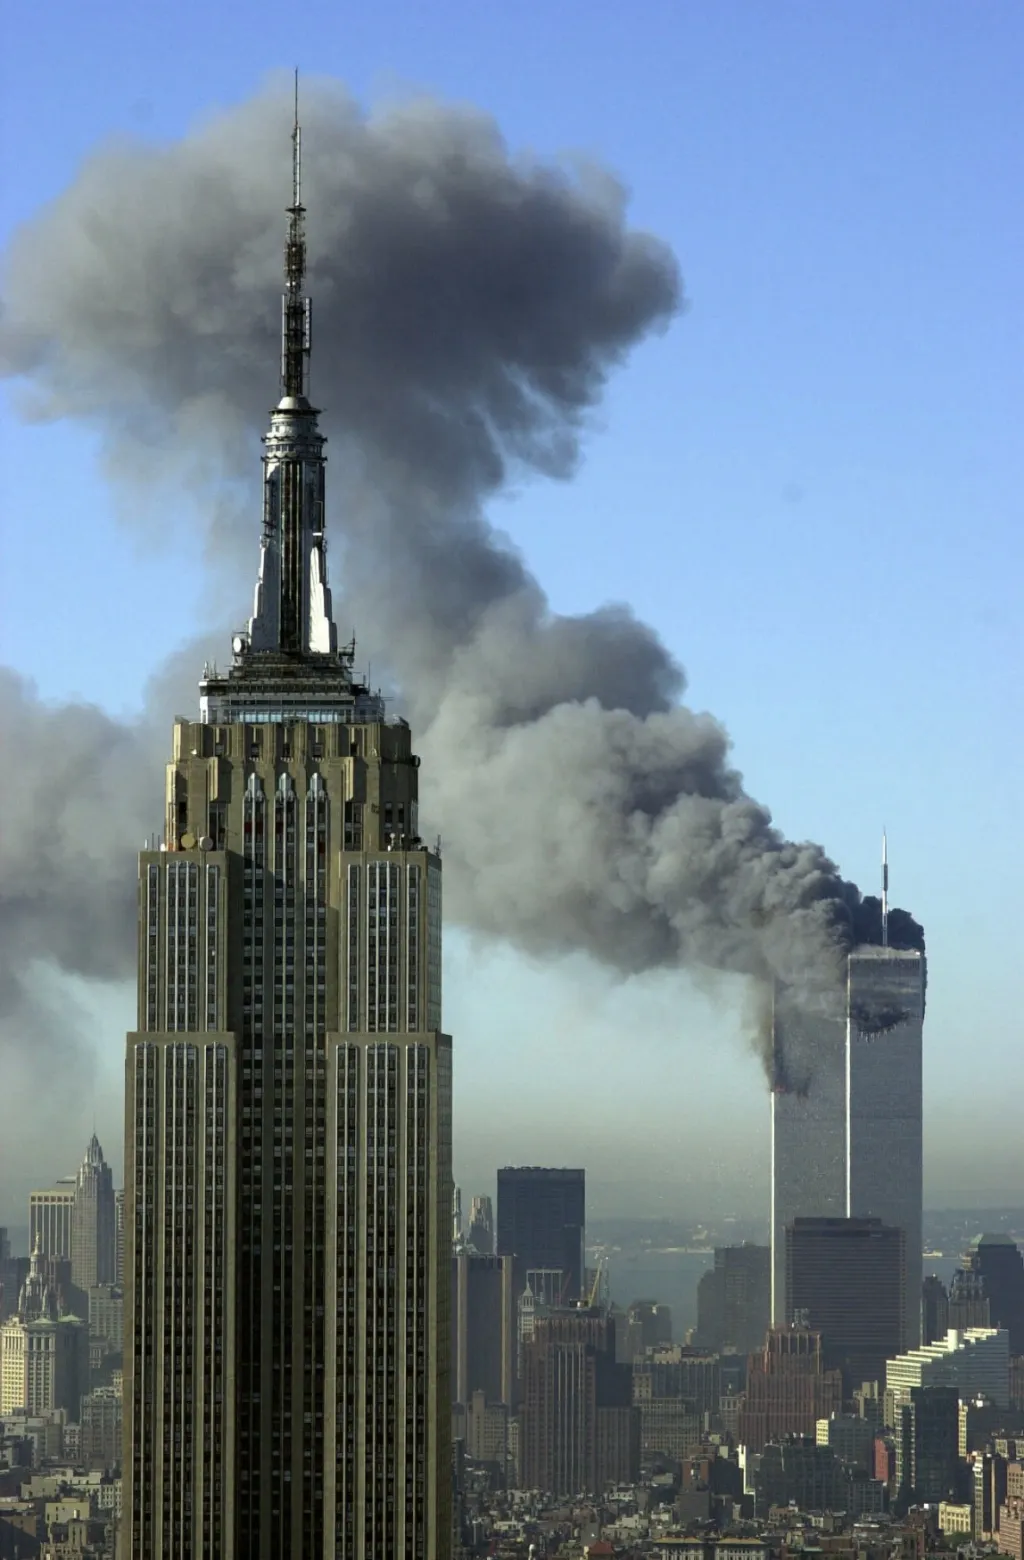 Mrakodrapy Světového obchodního centra (WTC) se přes počáteční odpor během realizace nakonec staly oblíbenou dominantou New Yorku, stejně jako kdysi Empire State Building. Útoky teroristů ale nepřežila ani jedna z budov „dvojčat“ - na místě je dnes památník obětí 11. září